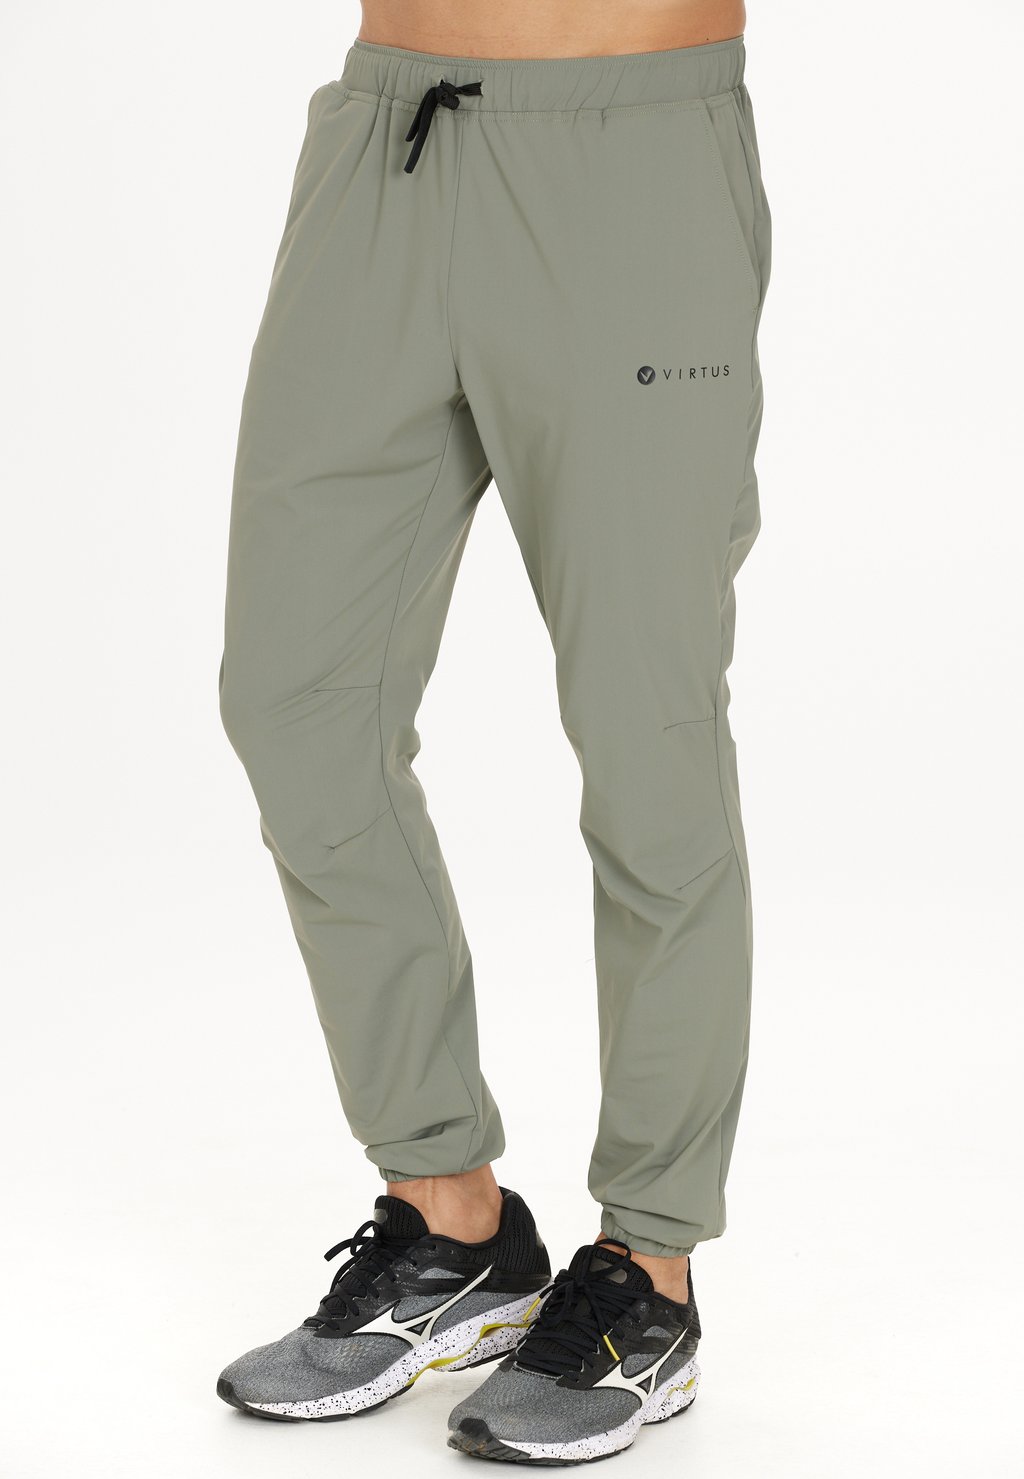 Спортивные брюки HOSE VIRTUS, цвет 3158 smoked sage цена и фото